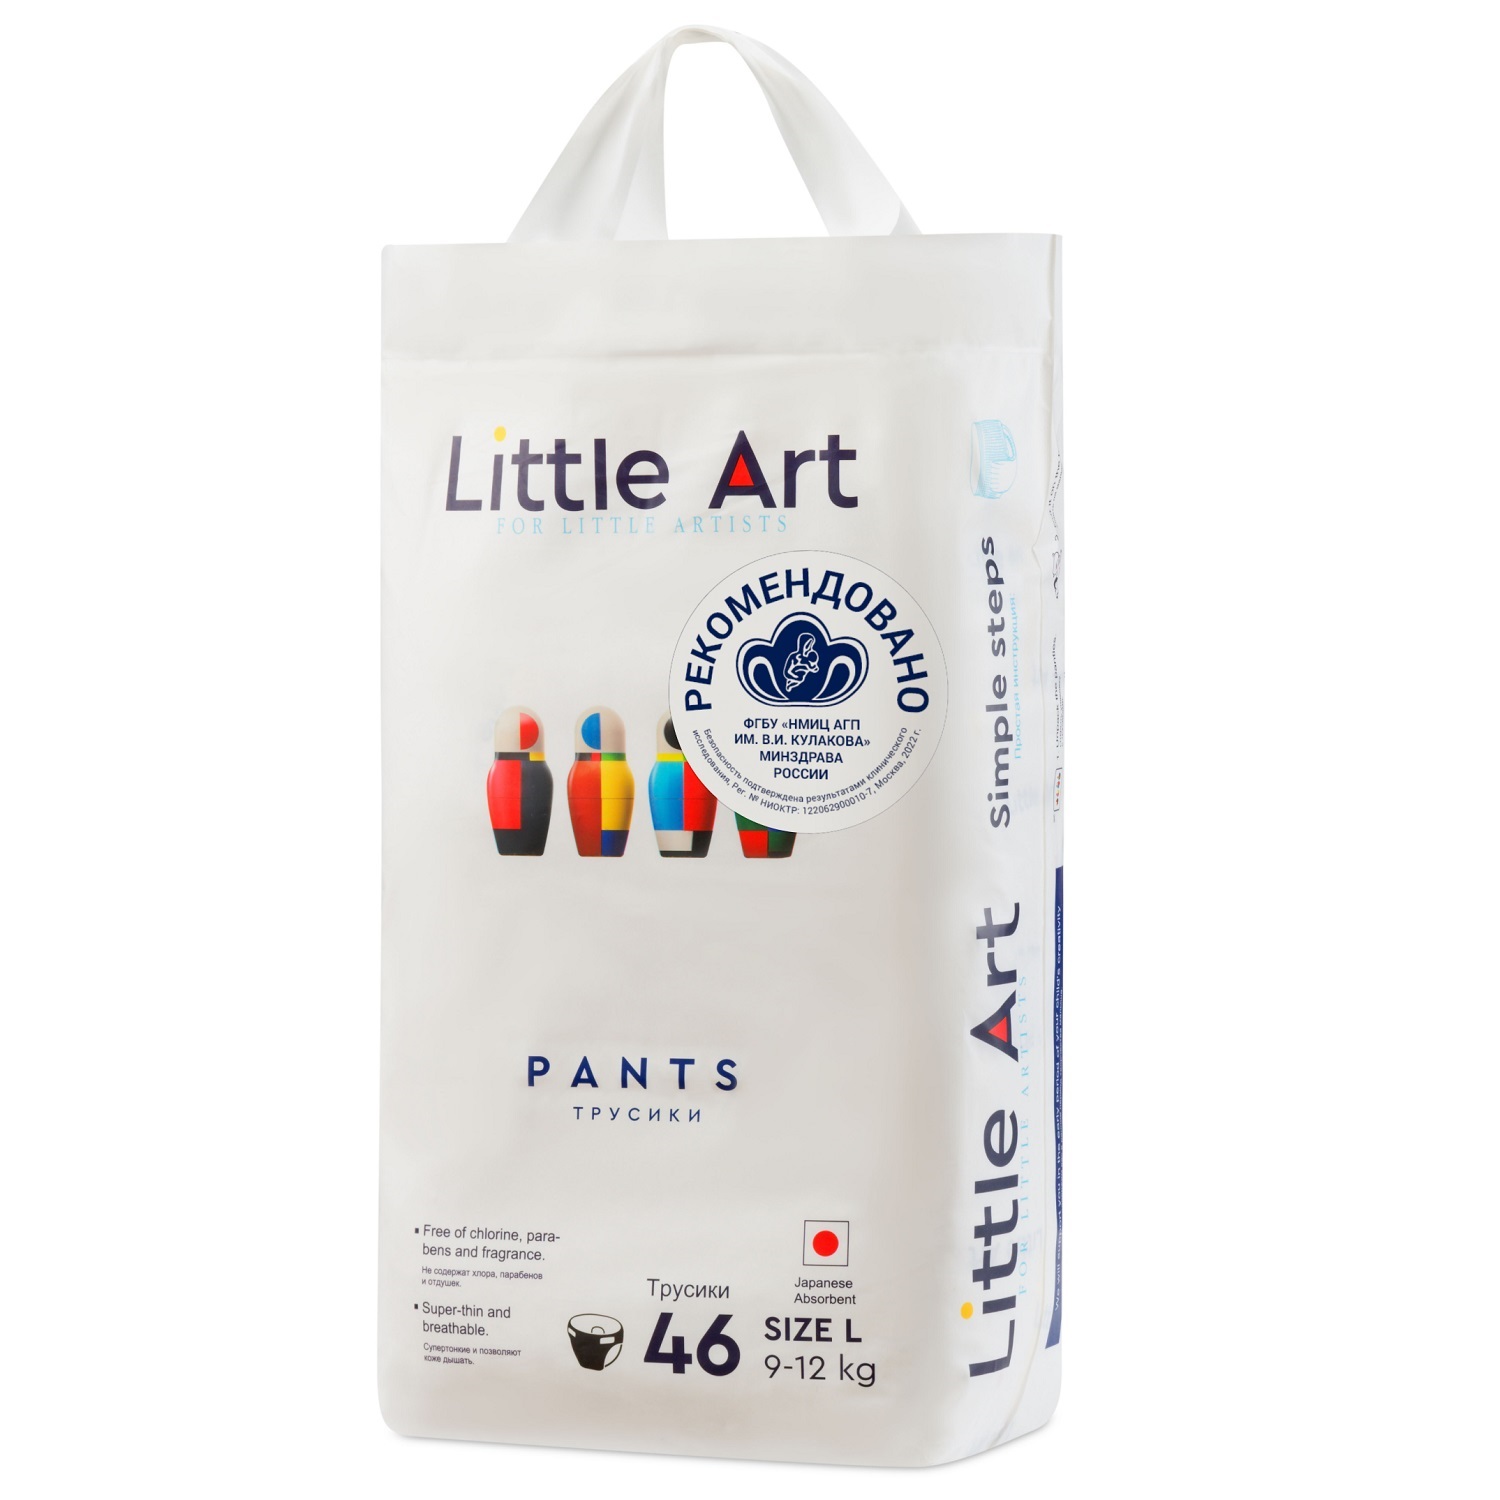 Купить Little Art Детские трусики-подгузники размер L 9-12 кг, 46 шт (Little Art, Трусики-подгузники), Китай